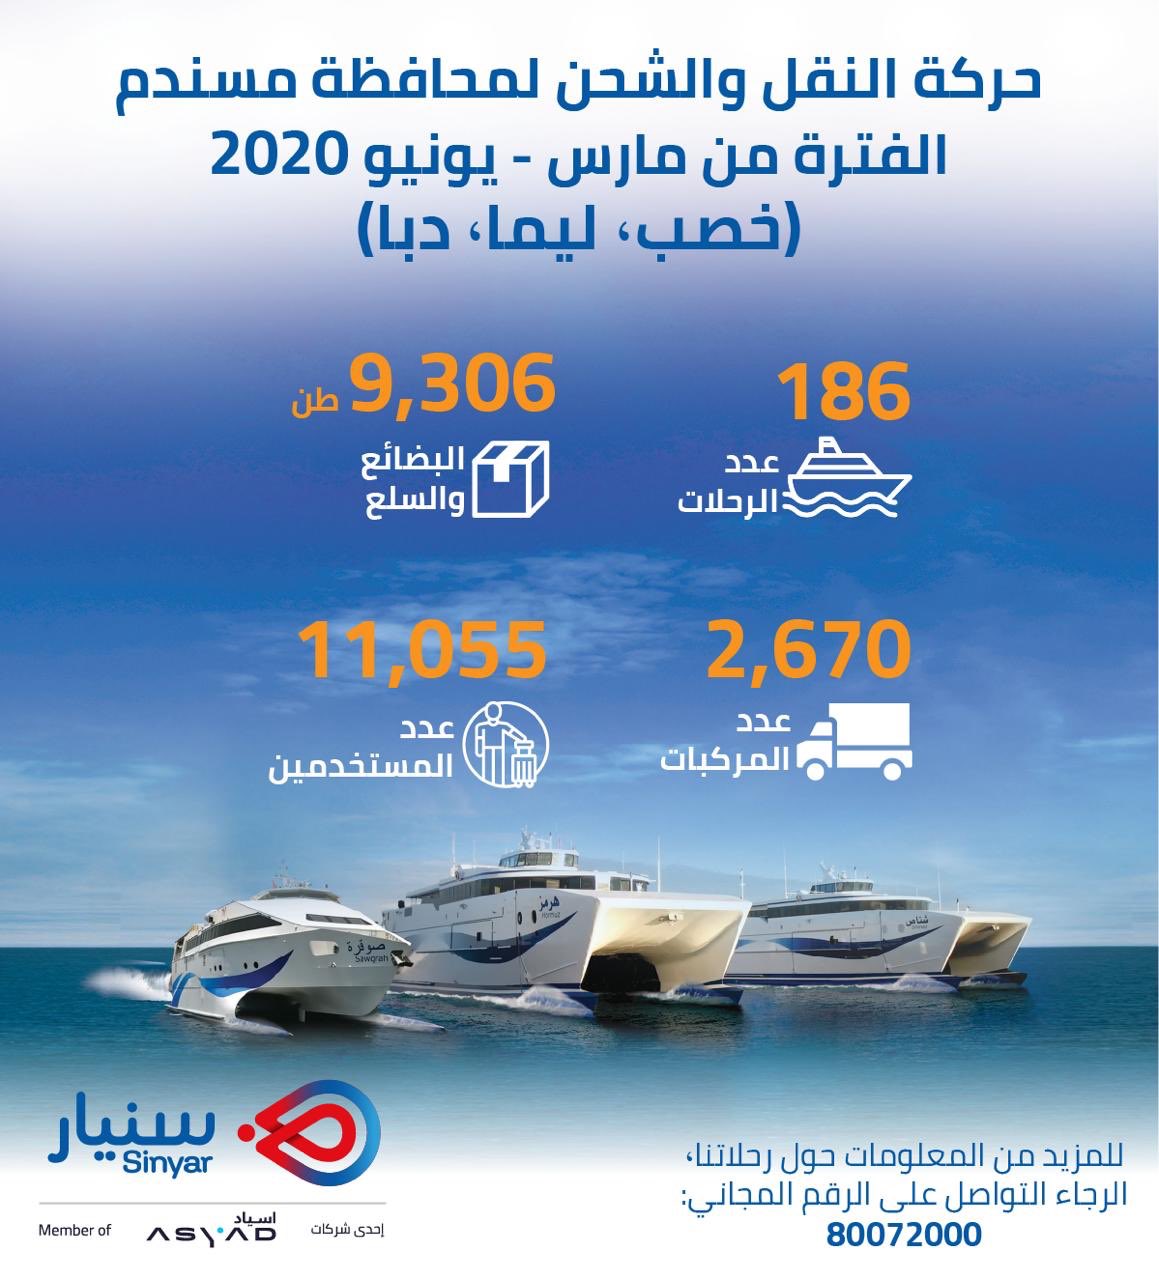 تسيير 294 رحلة من العبارات ونقل أكثر من 11 ألف شخص إلى مسندم خلال 4 شهور